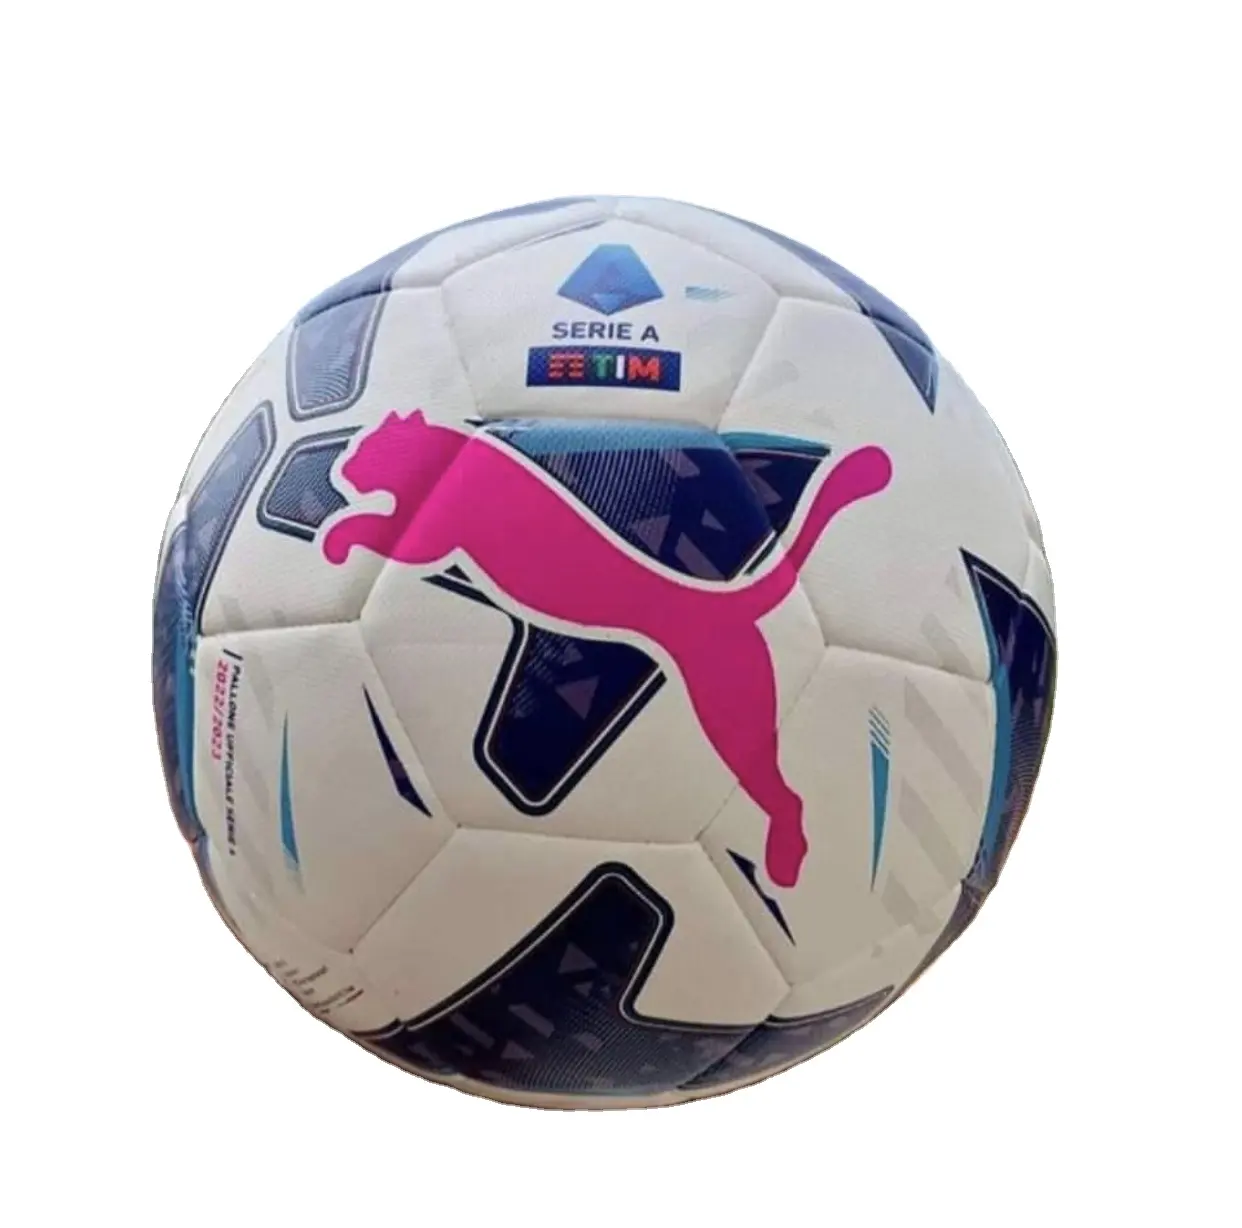 Mega Sale Beste Qualität PU PVC Größe 5 4 3 Zum Spielen von Fußbällen Mannschafts sport in Schulen Training Fußball